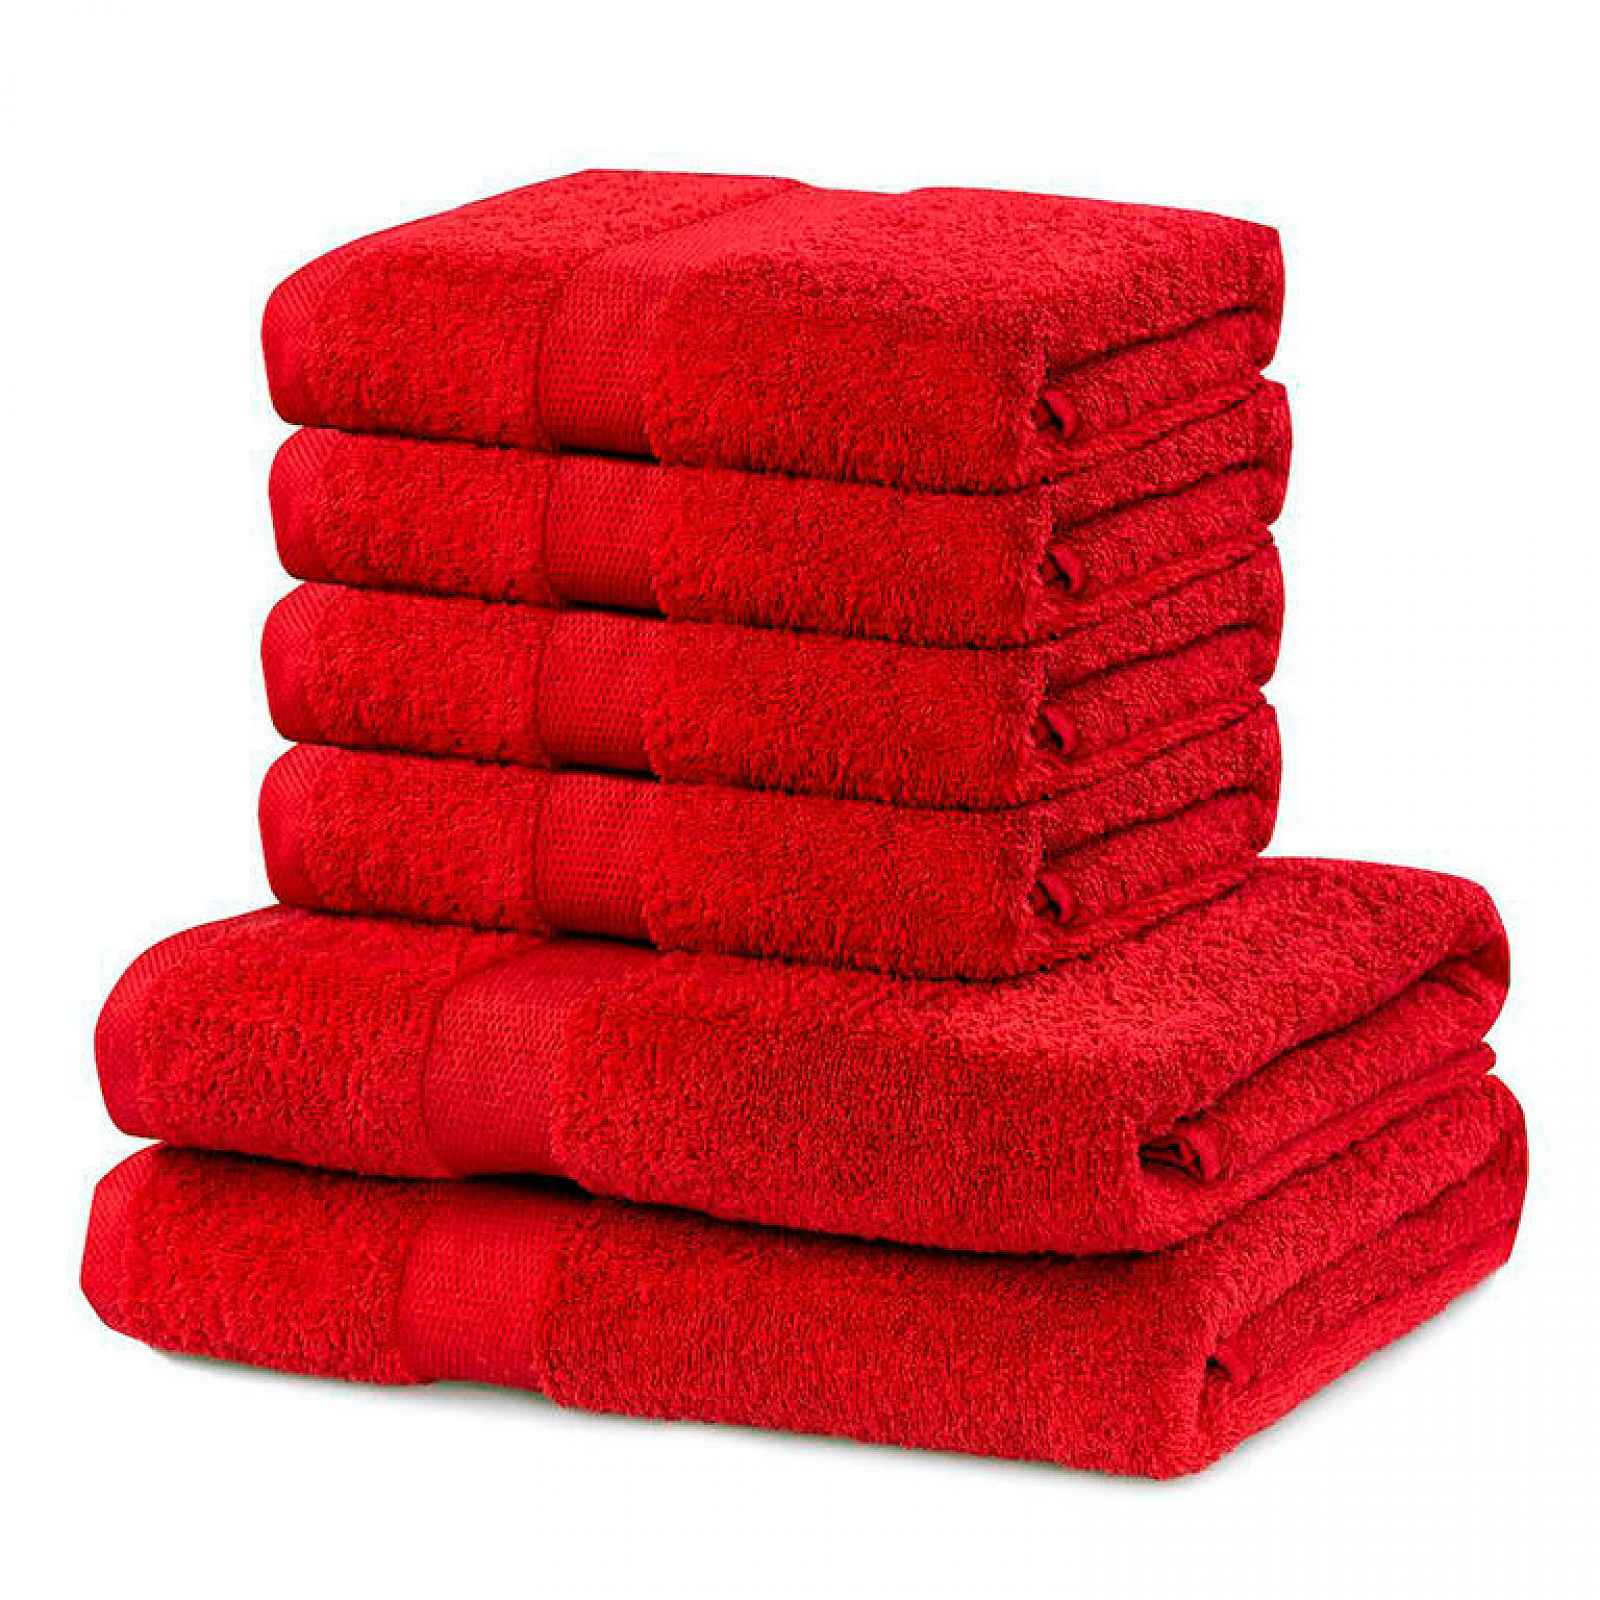 DecoKing Sada ručníků a osušek Marina červená, 4 ks 50 x 100 cm, 2 ks 70 x 140 cm